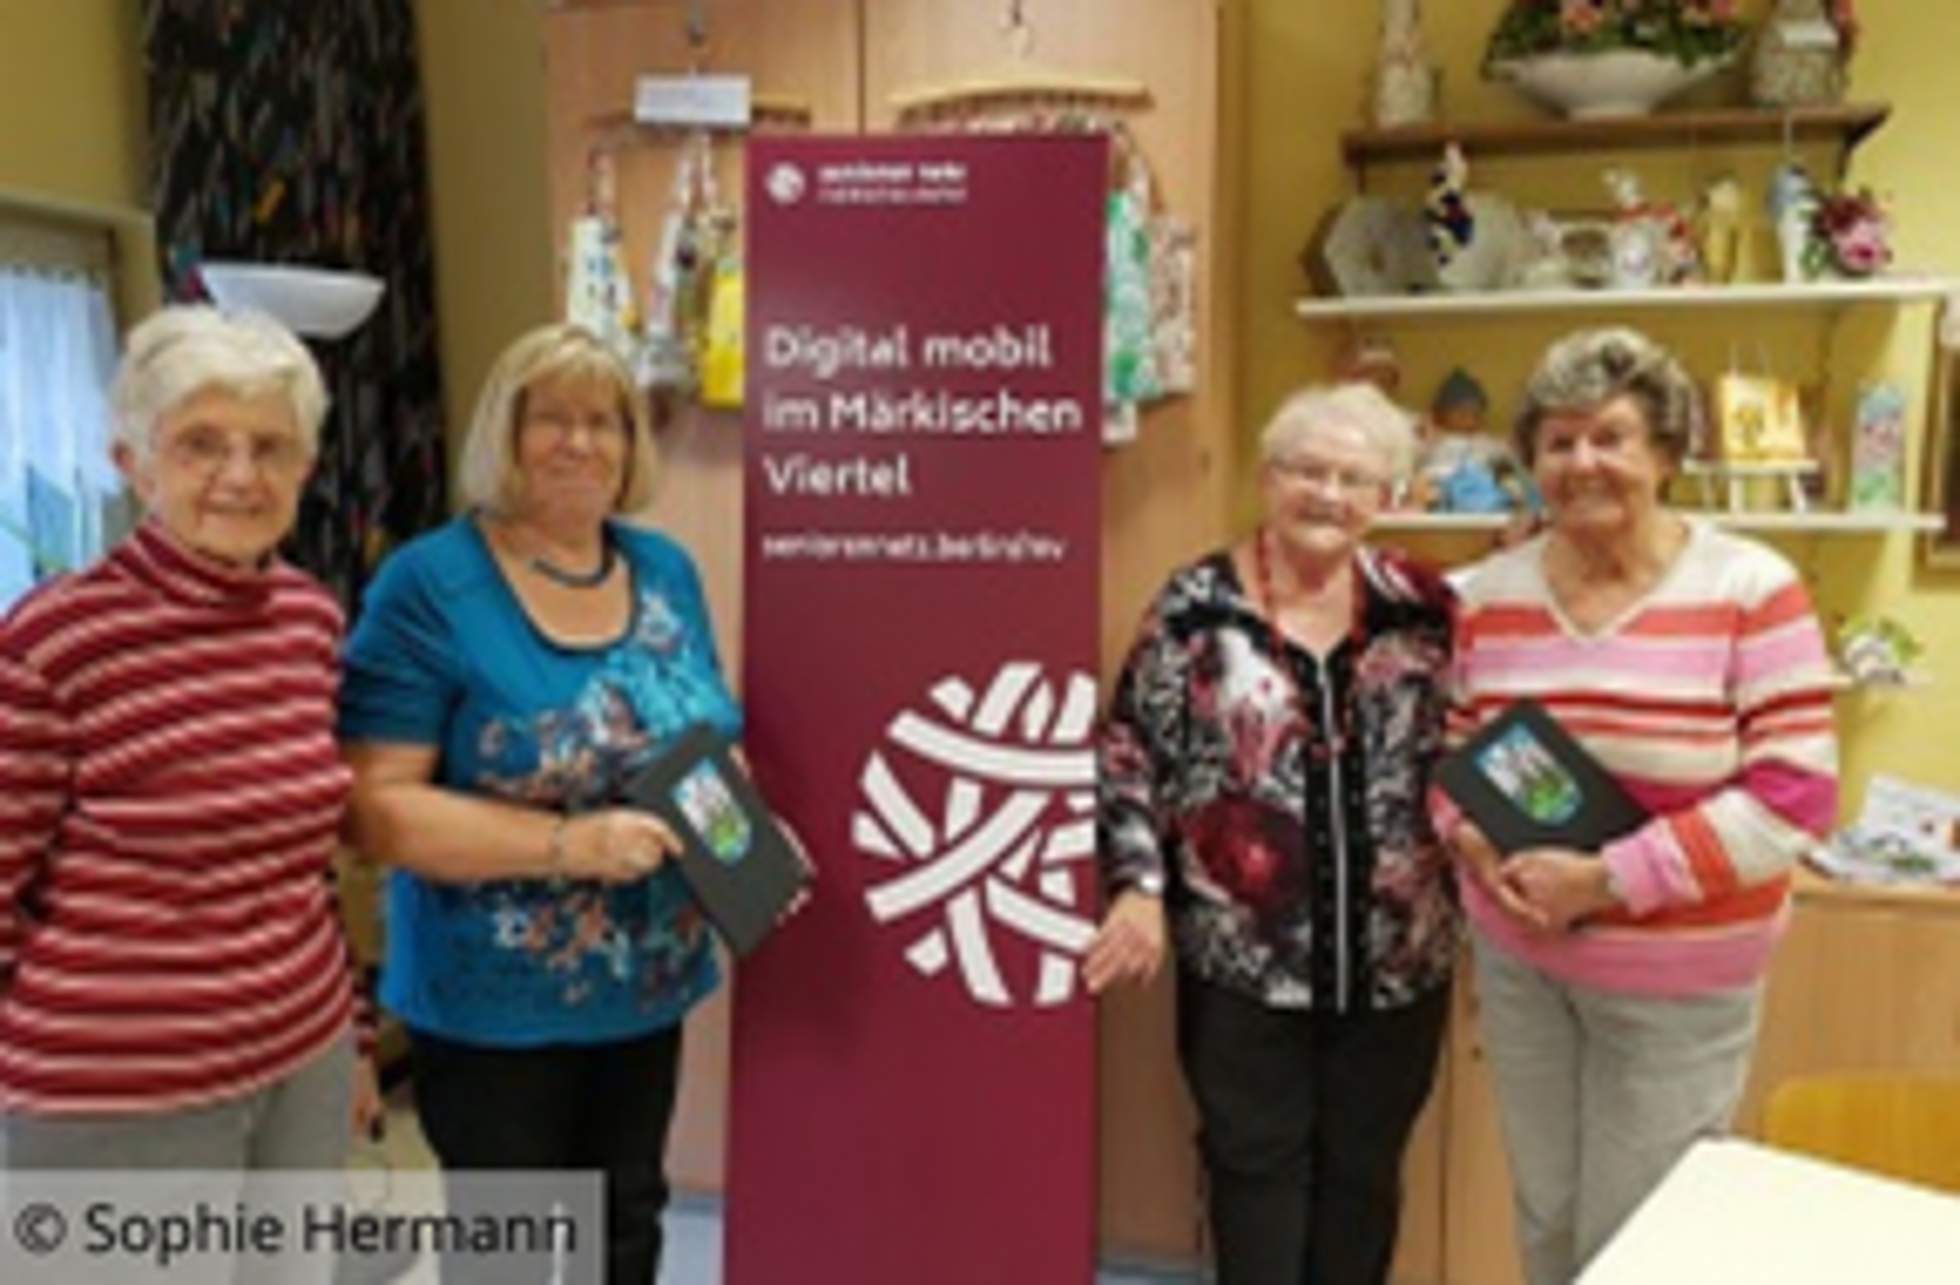 Evelyn Schmidt, Ursula Quanz, Sigrid Polenz, Ruth Schley stehen vor dem Banner von "SeniorenNetz - Digital mobil im Märkischen Viertel"